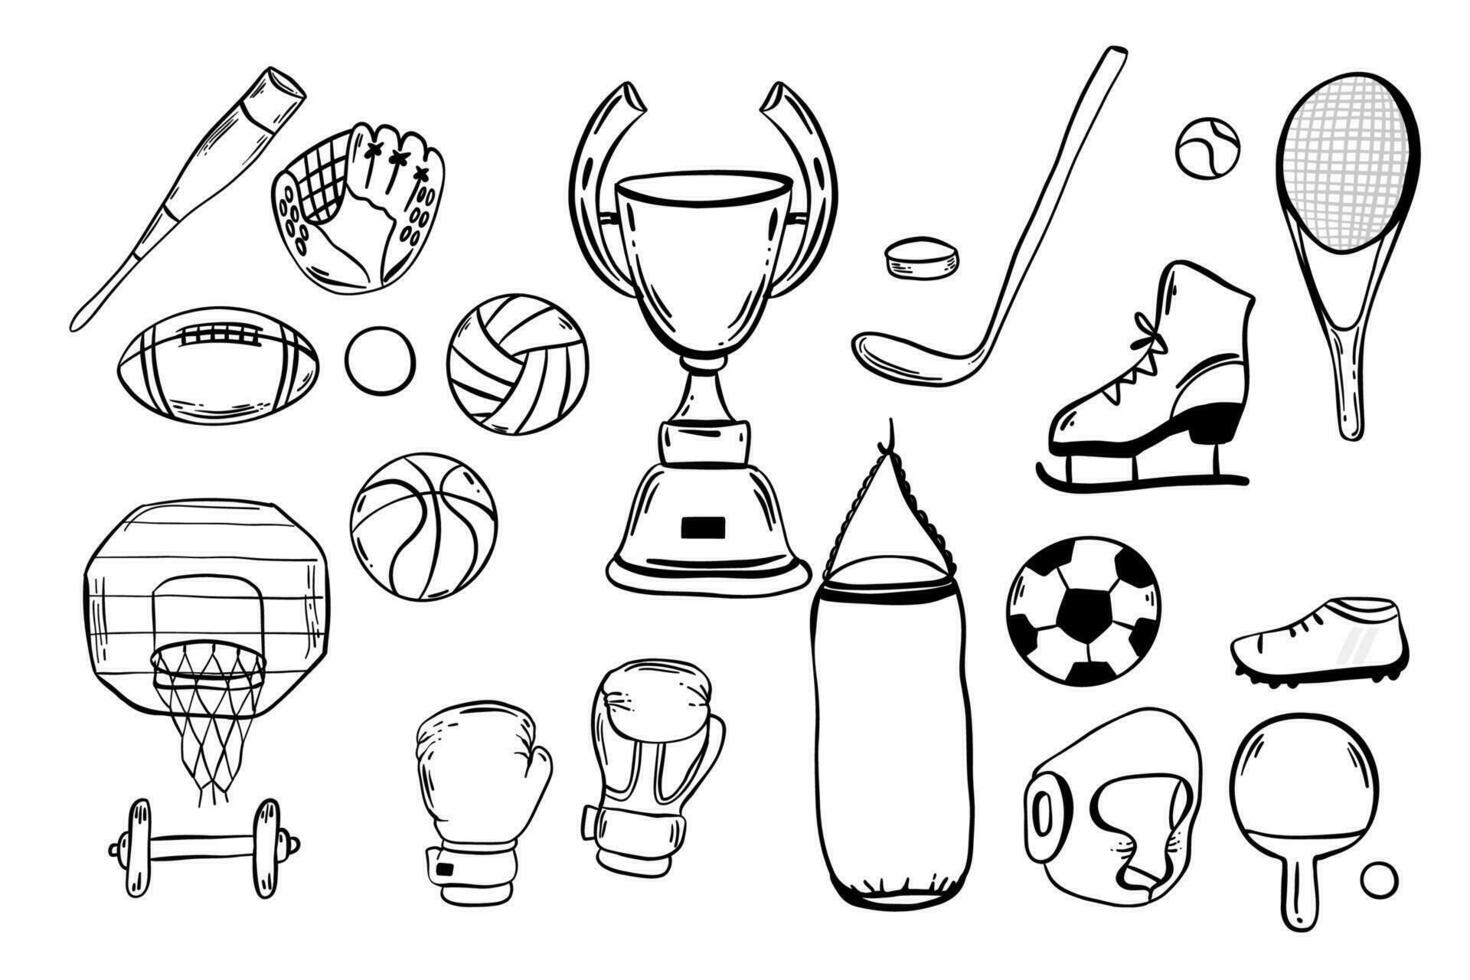 sport Utrustning. vektor ikoner uppsättning av sport lager med bollar för volleyboll, baseboll, fotboll spel och tennis, golf boll, biljard, racket, bowling. kondition Gym verktyg. team spel,